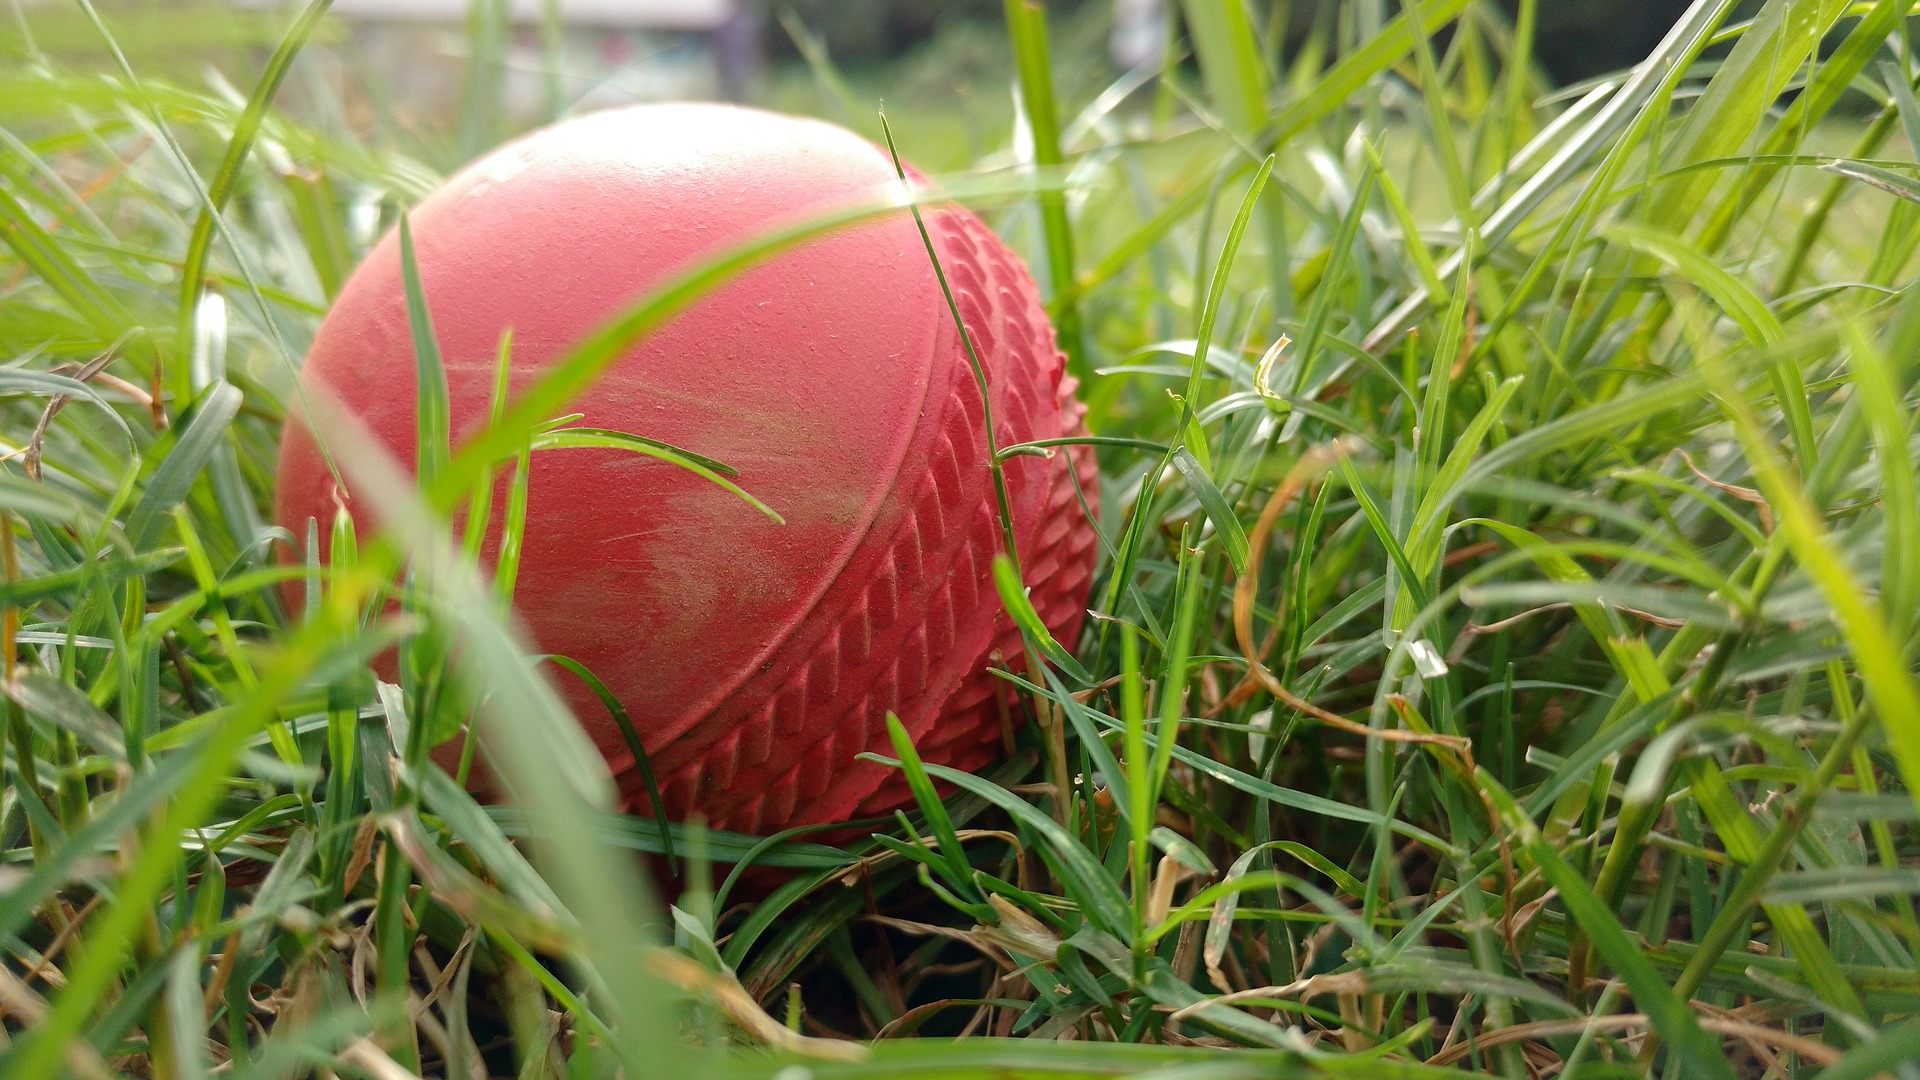 cricketbal in gras